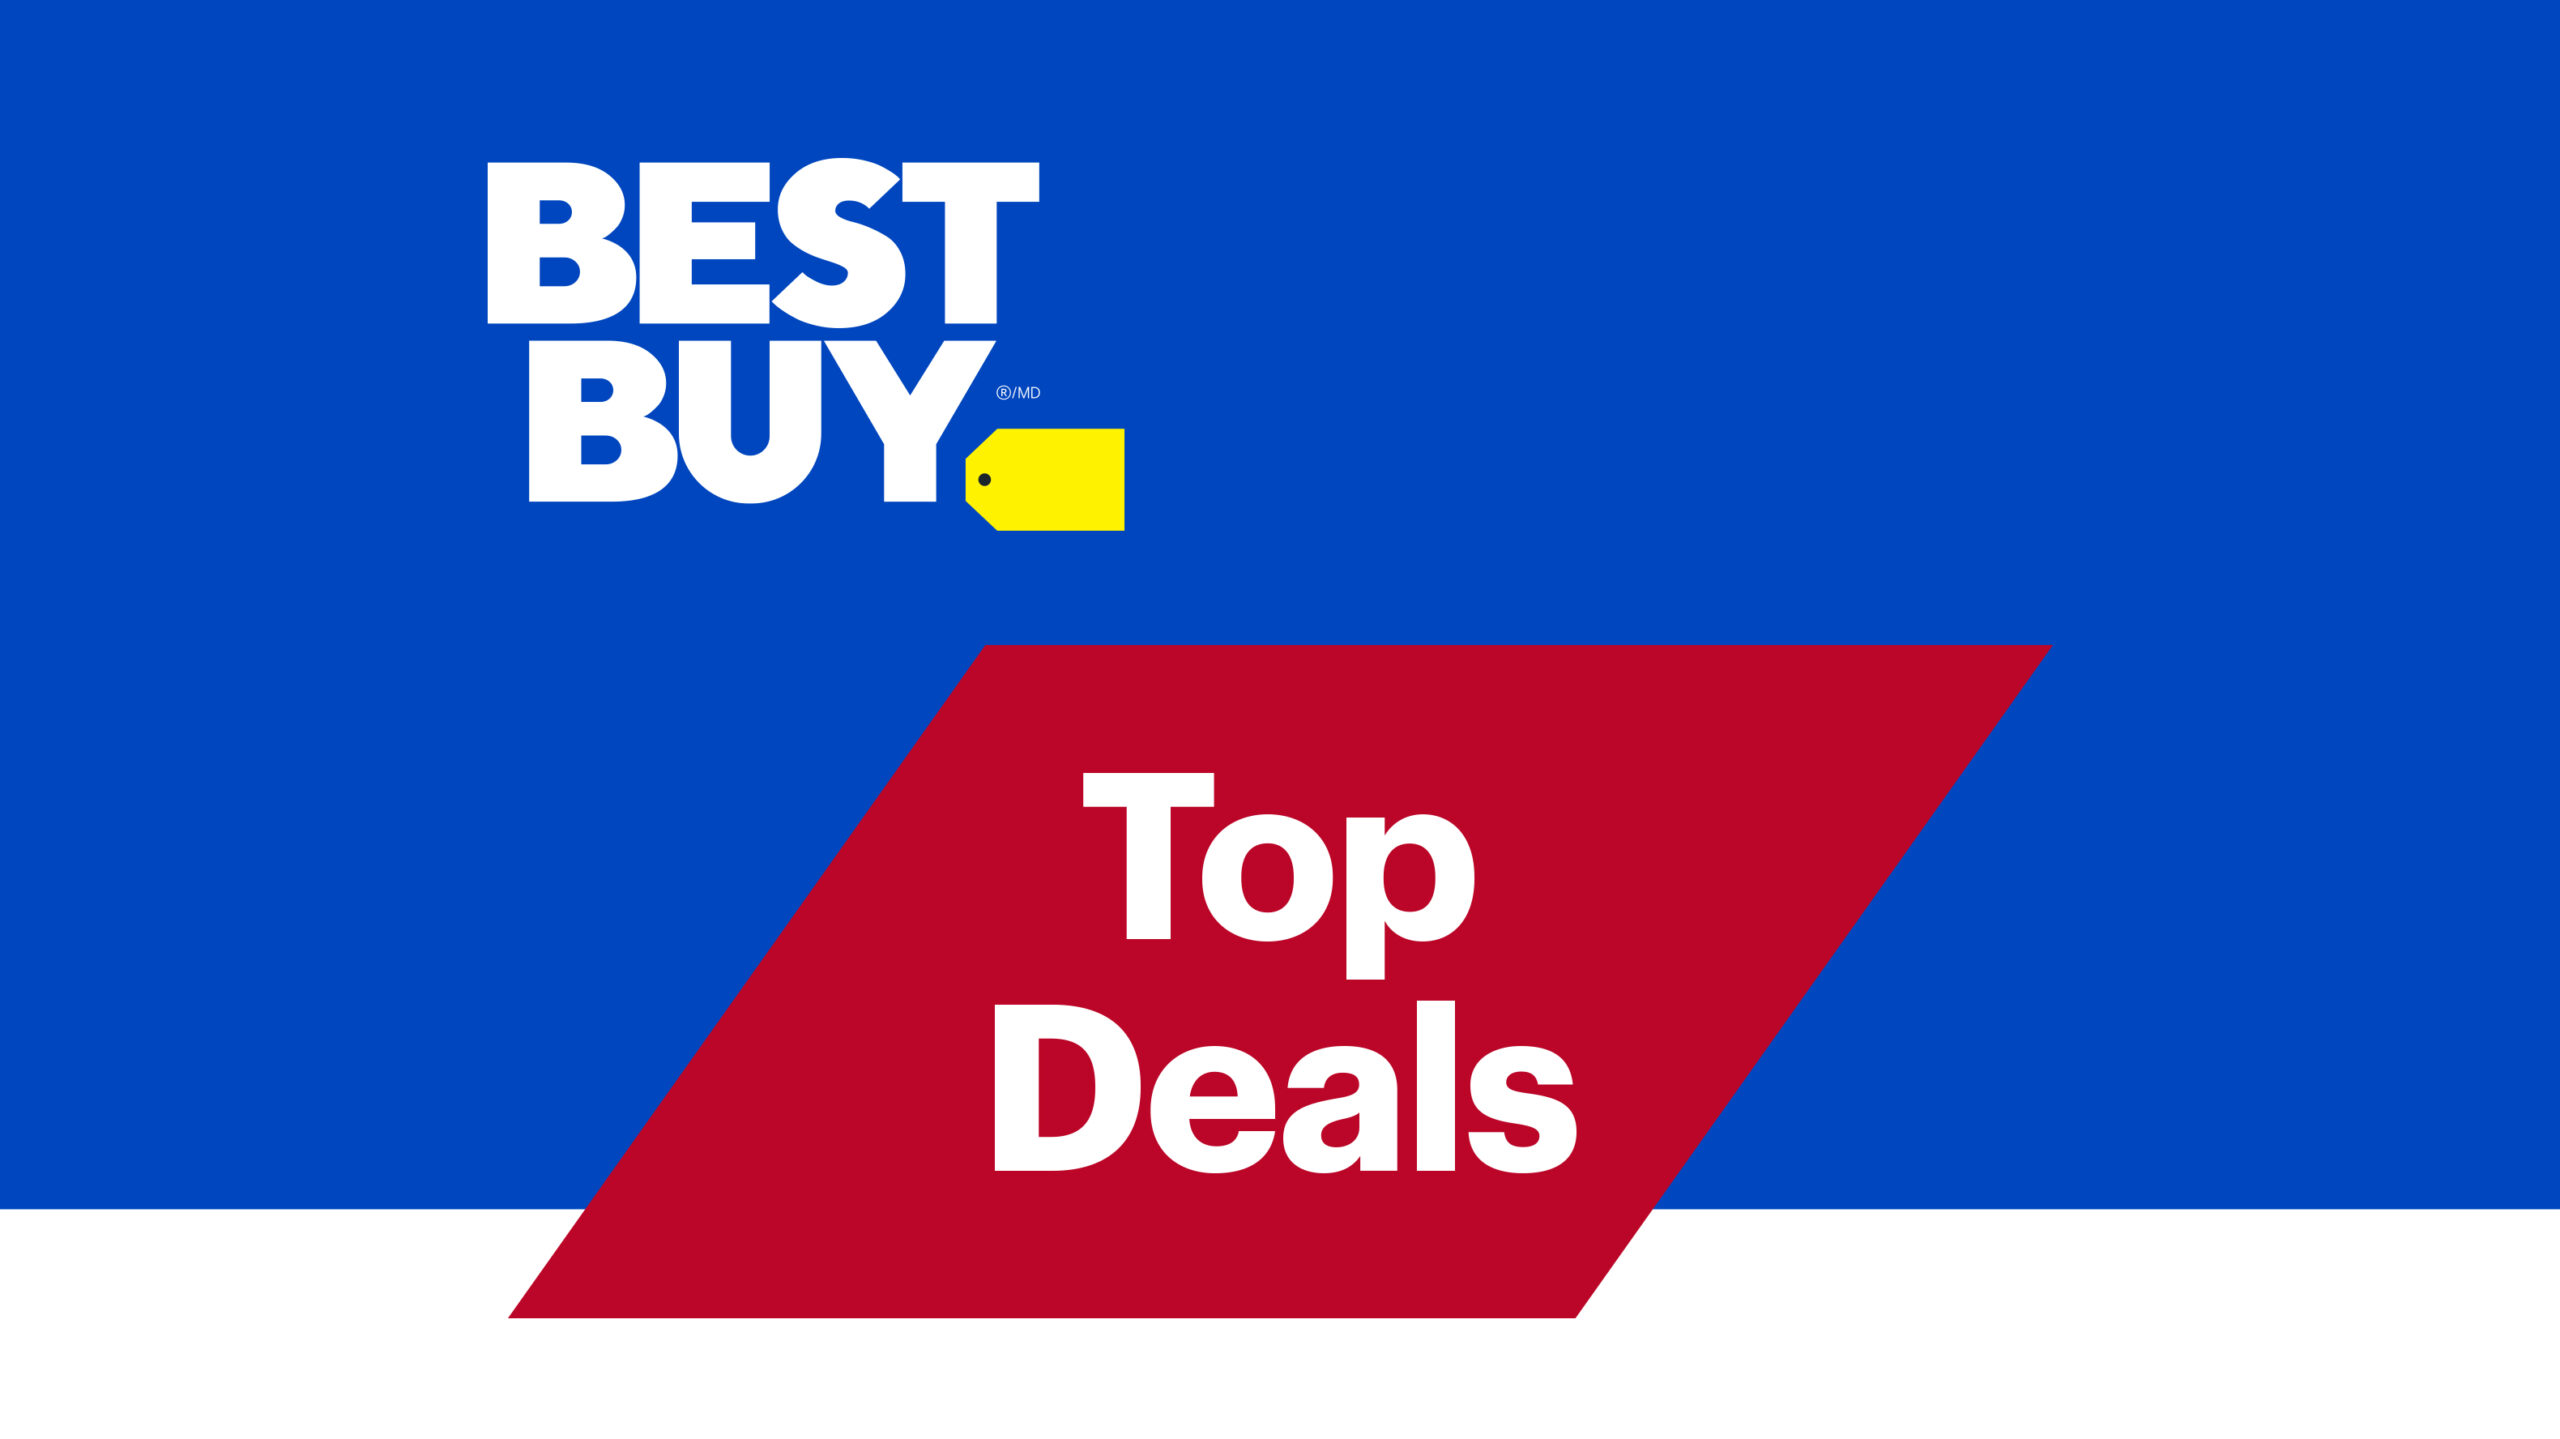 Best Buy Top Deals March 12, 2021